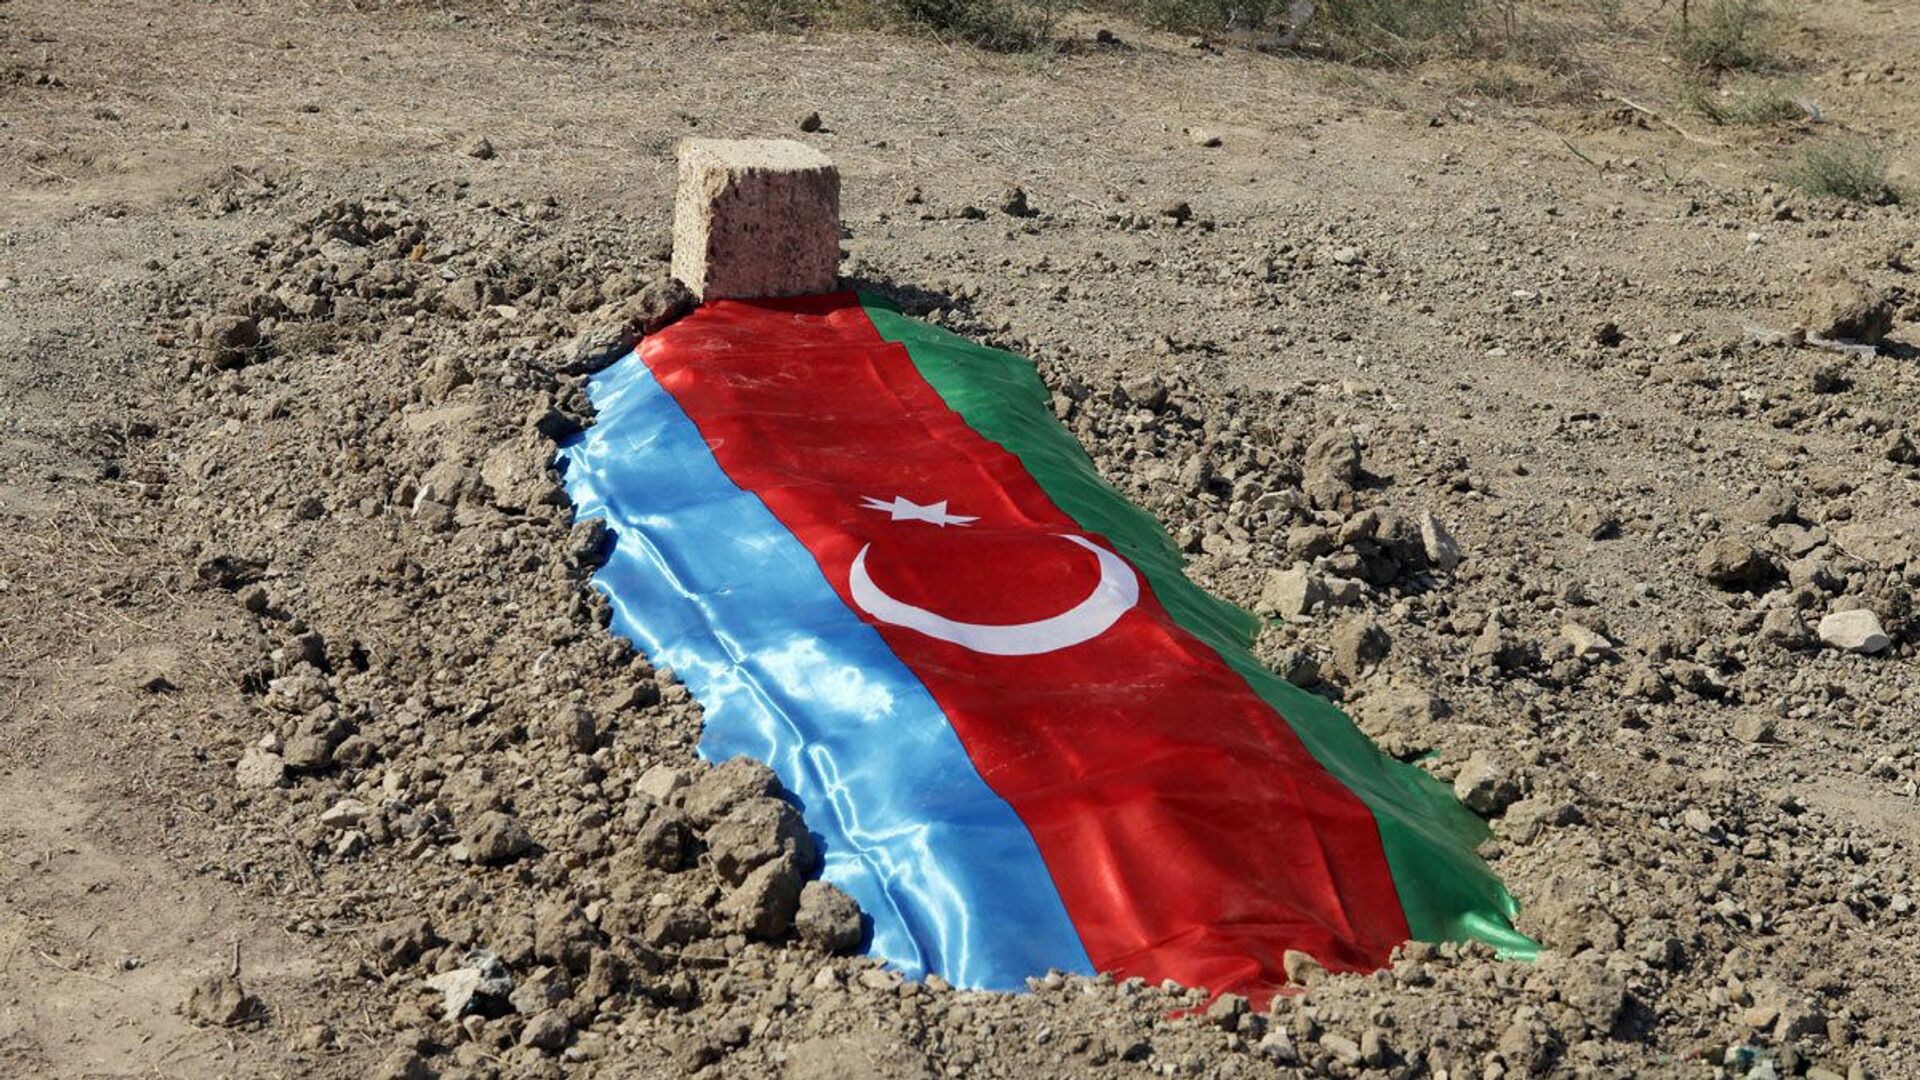 Могила погибшего азербайджанского военнослужащего, фото из архива - Sputnik Азербайджан, 1920, 30.09.2021